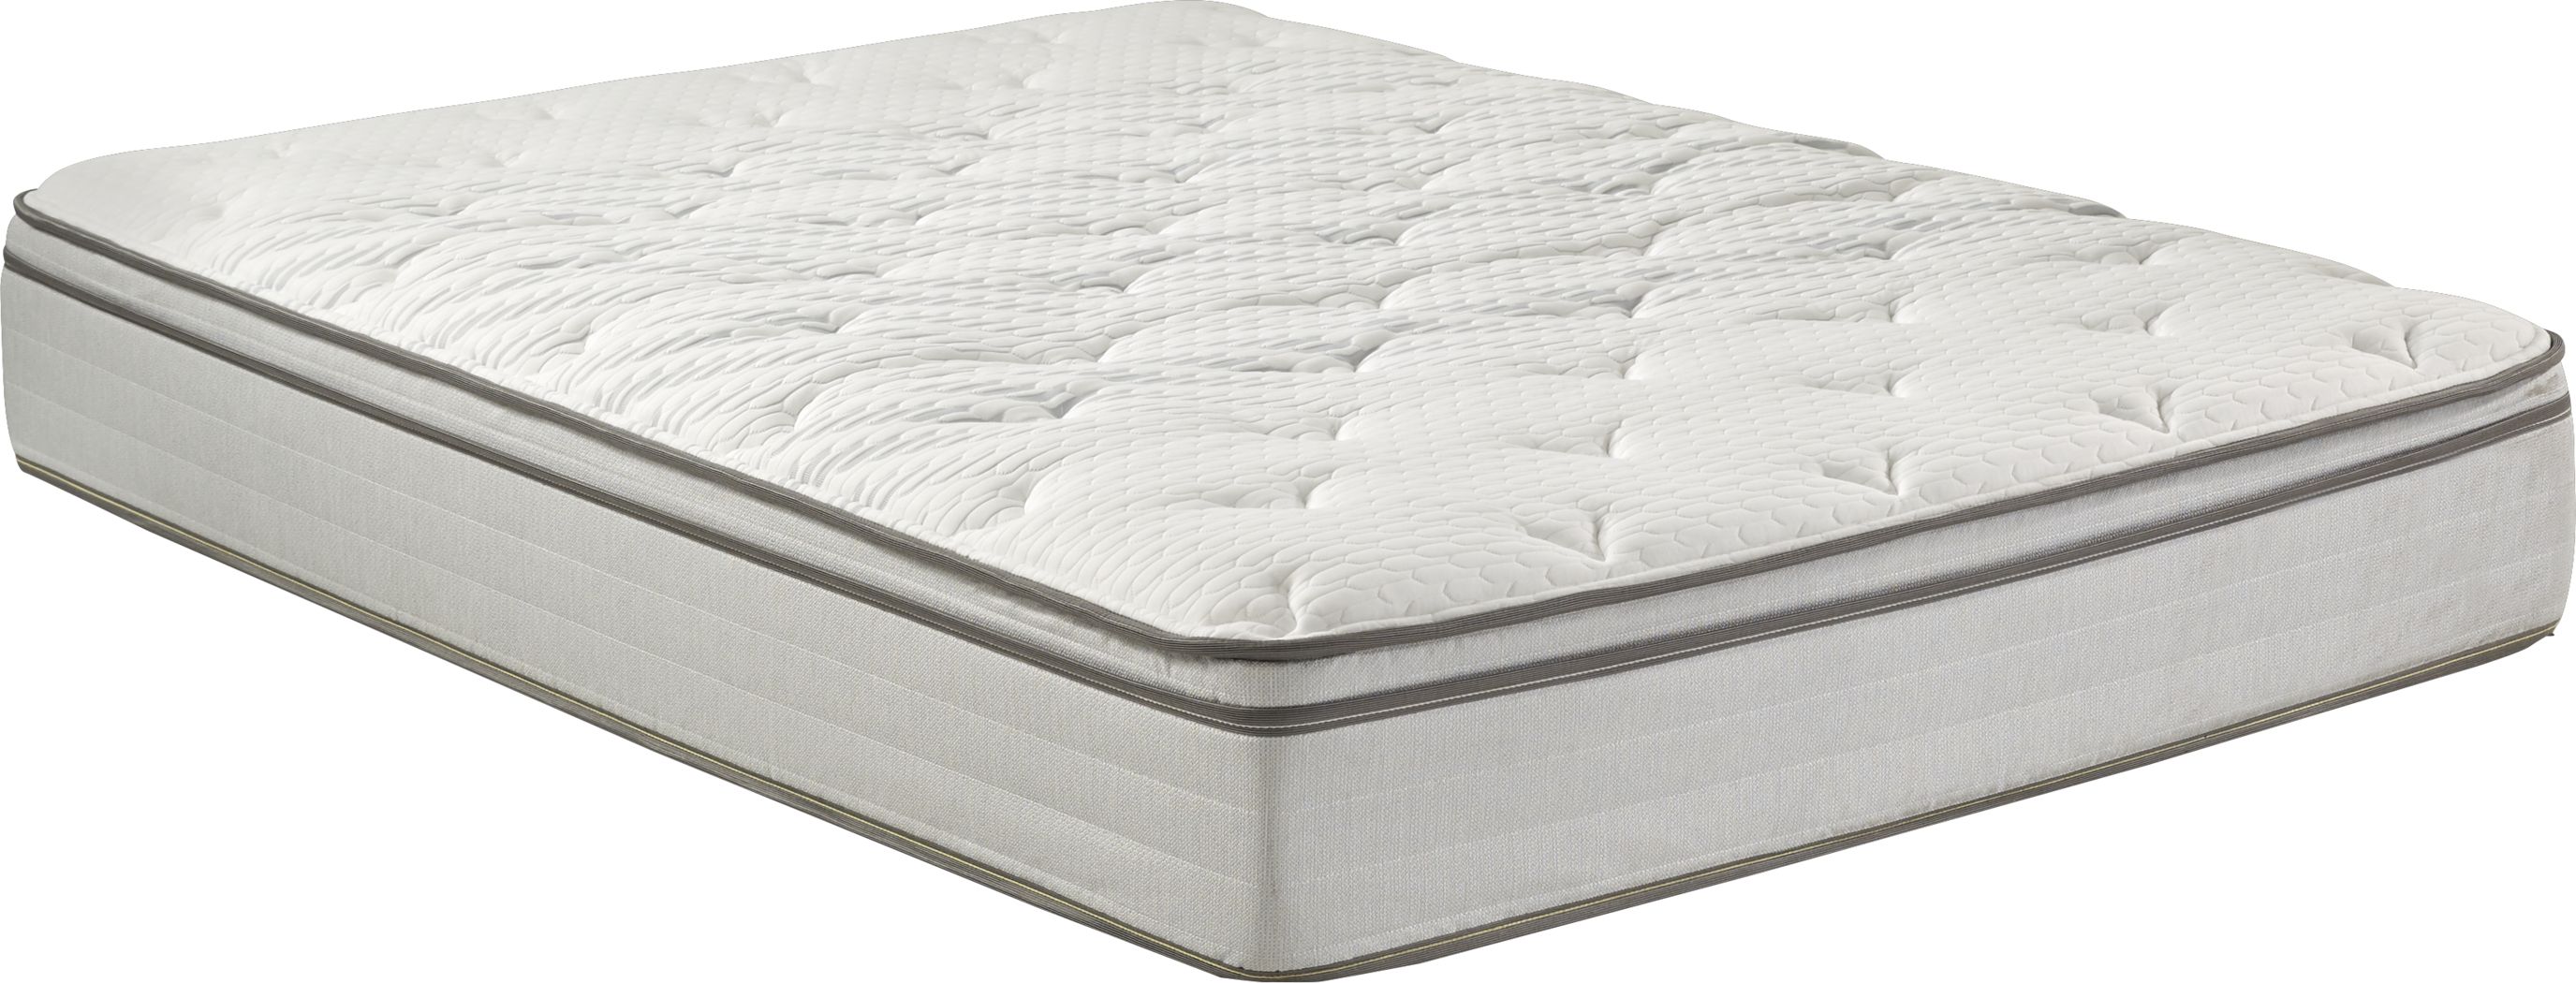 kingsdown hybrid medium mattress